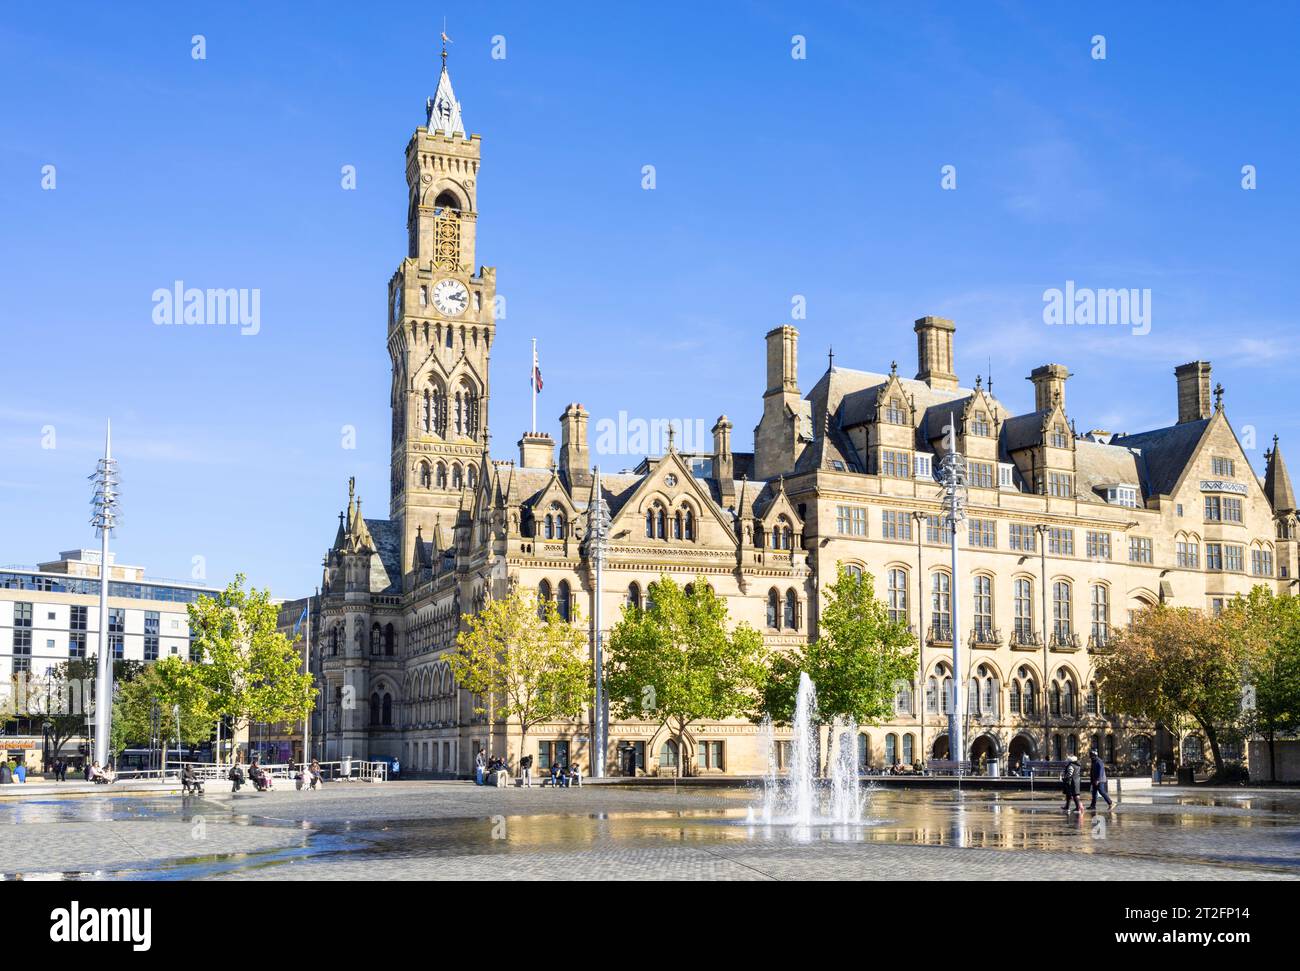 Bradford Town Hall horloge Tour ou Bradford City Hall dans le centre-ville de Bradford Centenary Square avec fontaines Bradford Yorkshire Angleterre Royaume-Uni GB Europe Banque D'Images